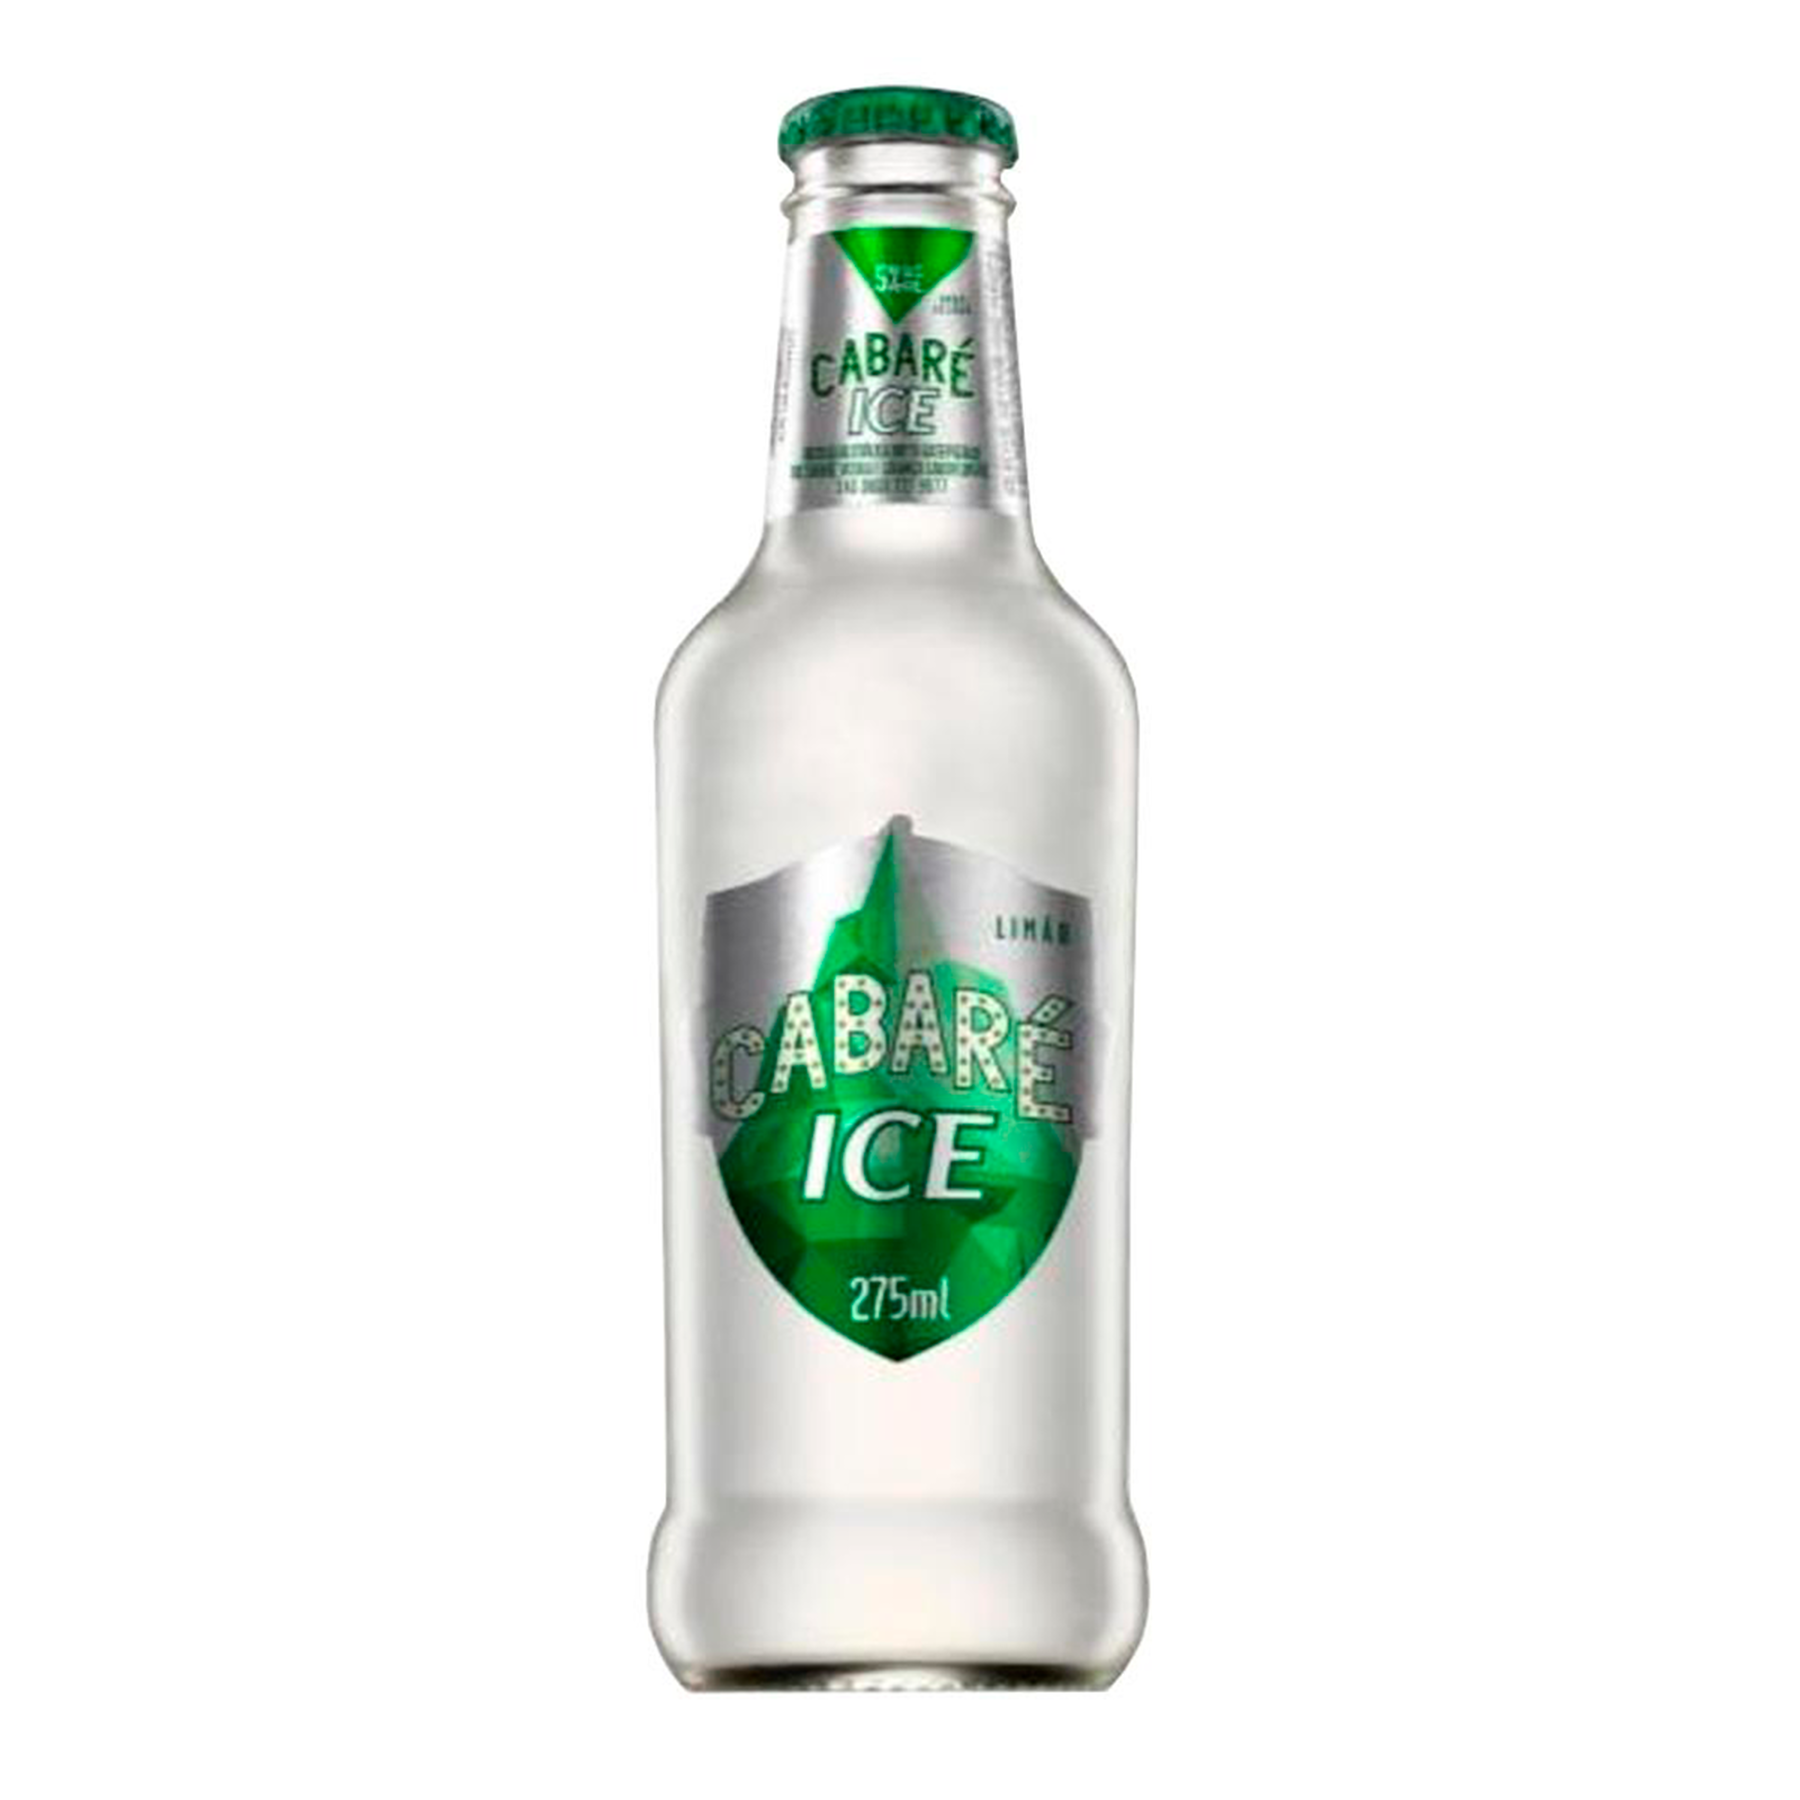 Bebida Mista Alcoólica Limão Cabaré Ice Garrafa 275ml